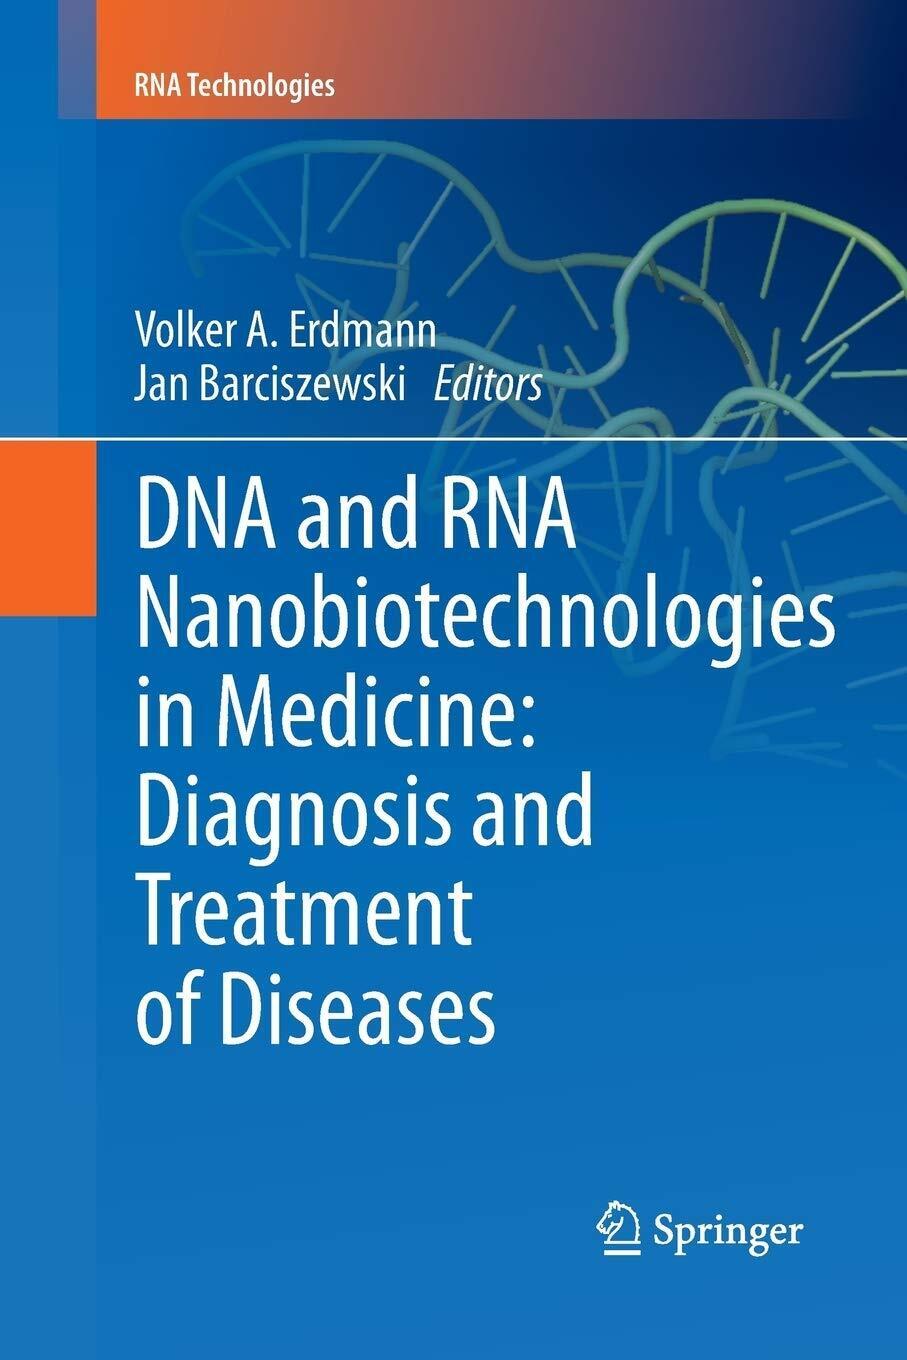 DNA and RNA Nanobiotechnologies in Medicine - Springer, 2015